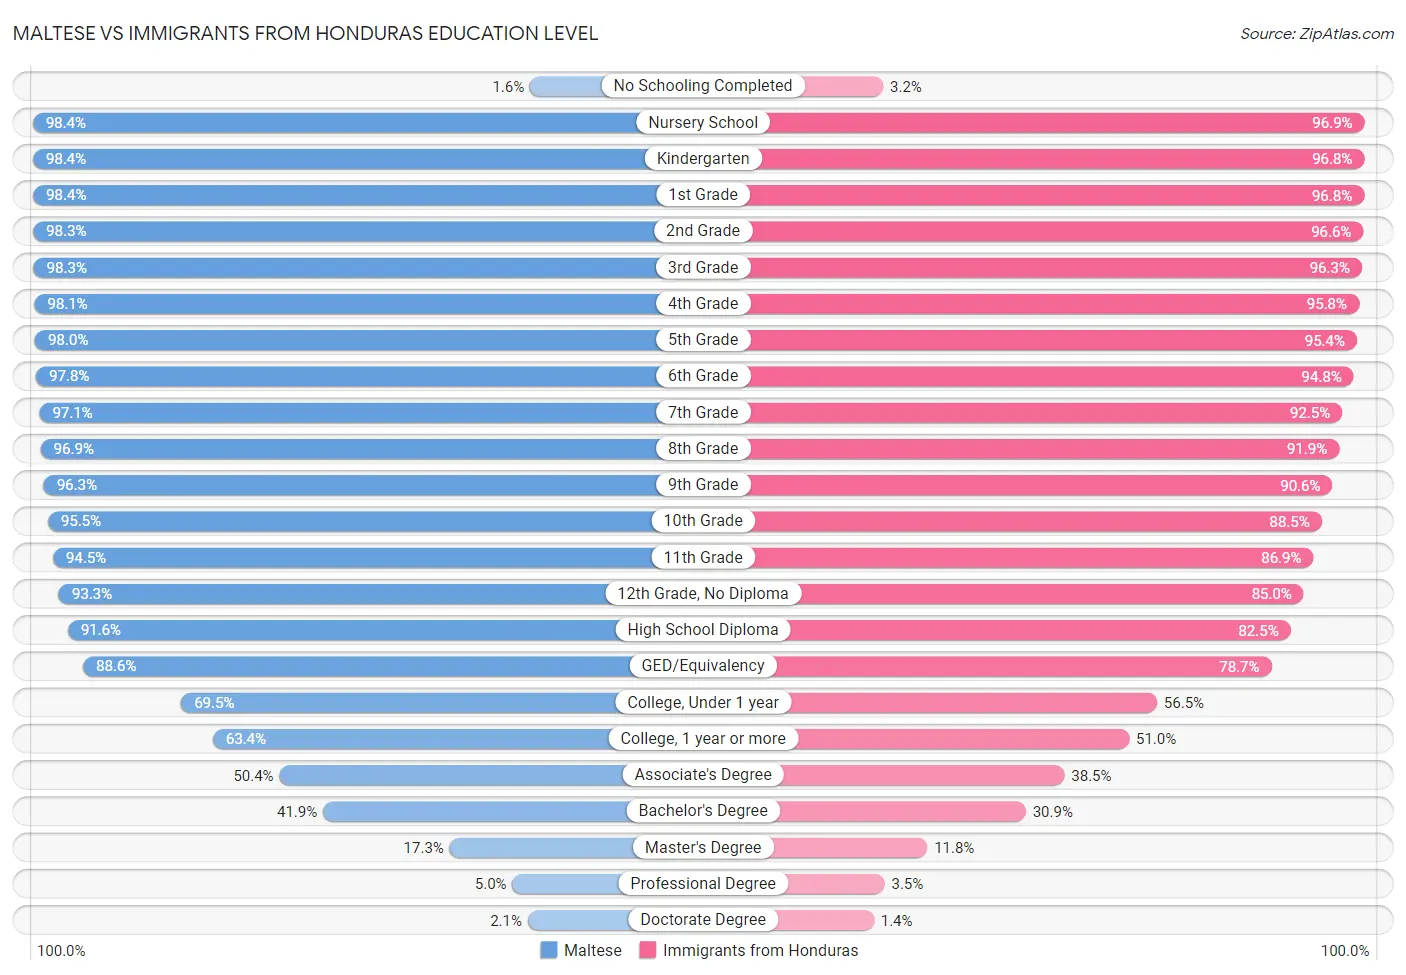 Maltese vs Immigrants from Honduras Education Level